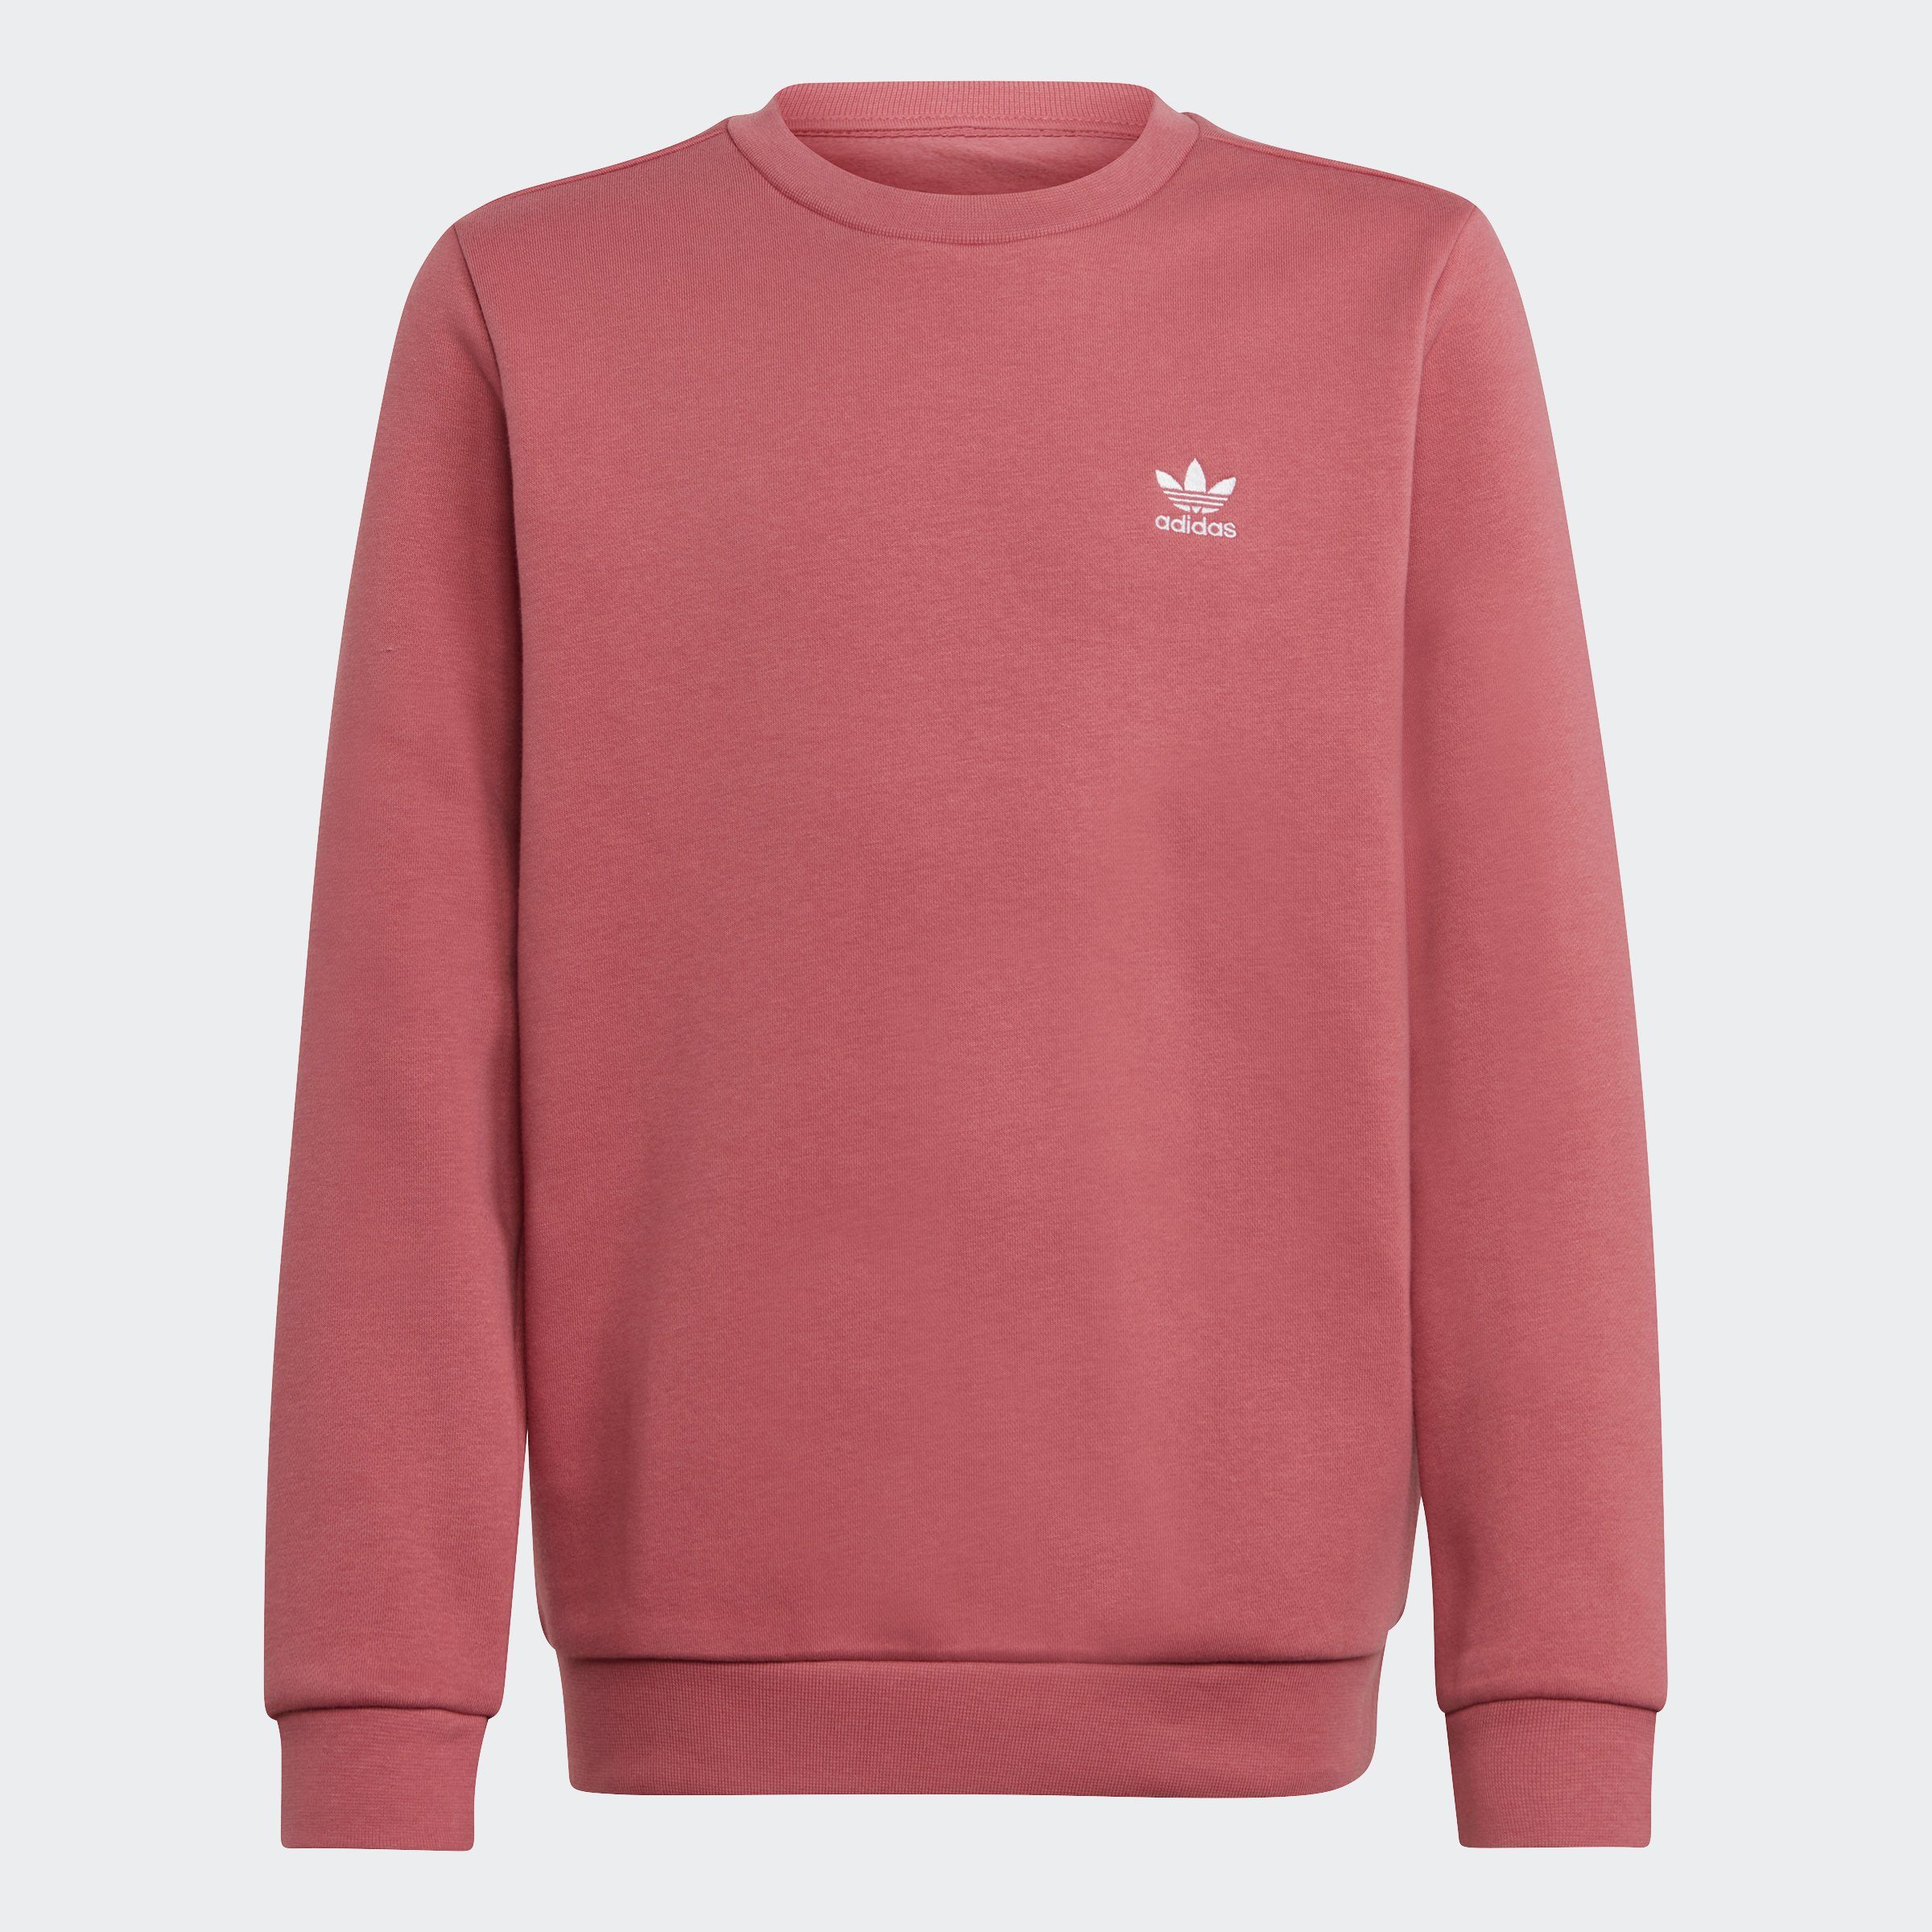 [Kostenloser Versand landesweit] adidas Originals Sweatshirt ADICOLOR Pink Strata